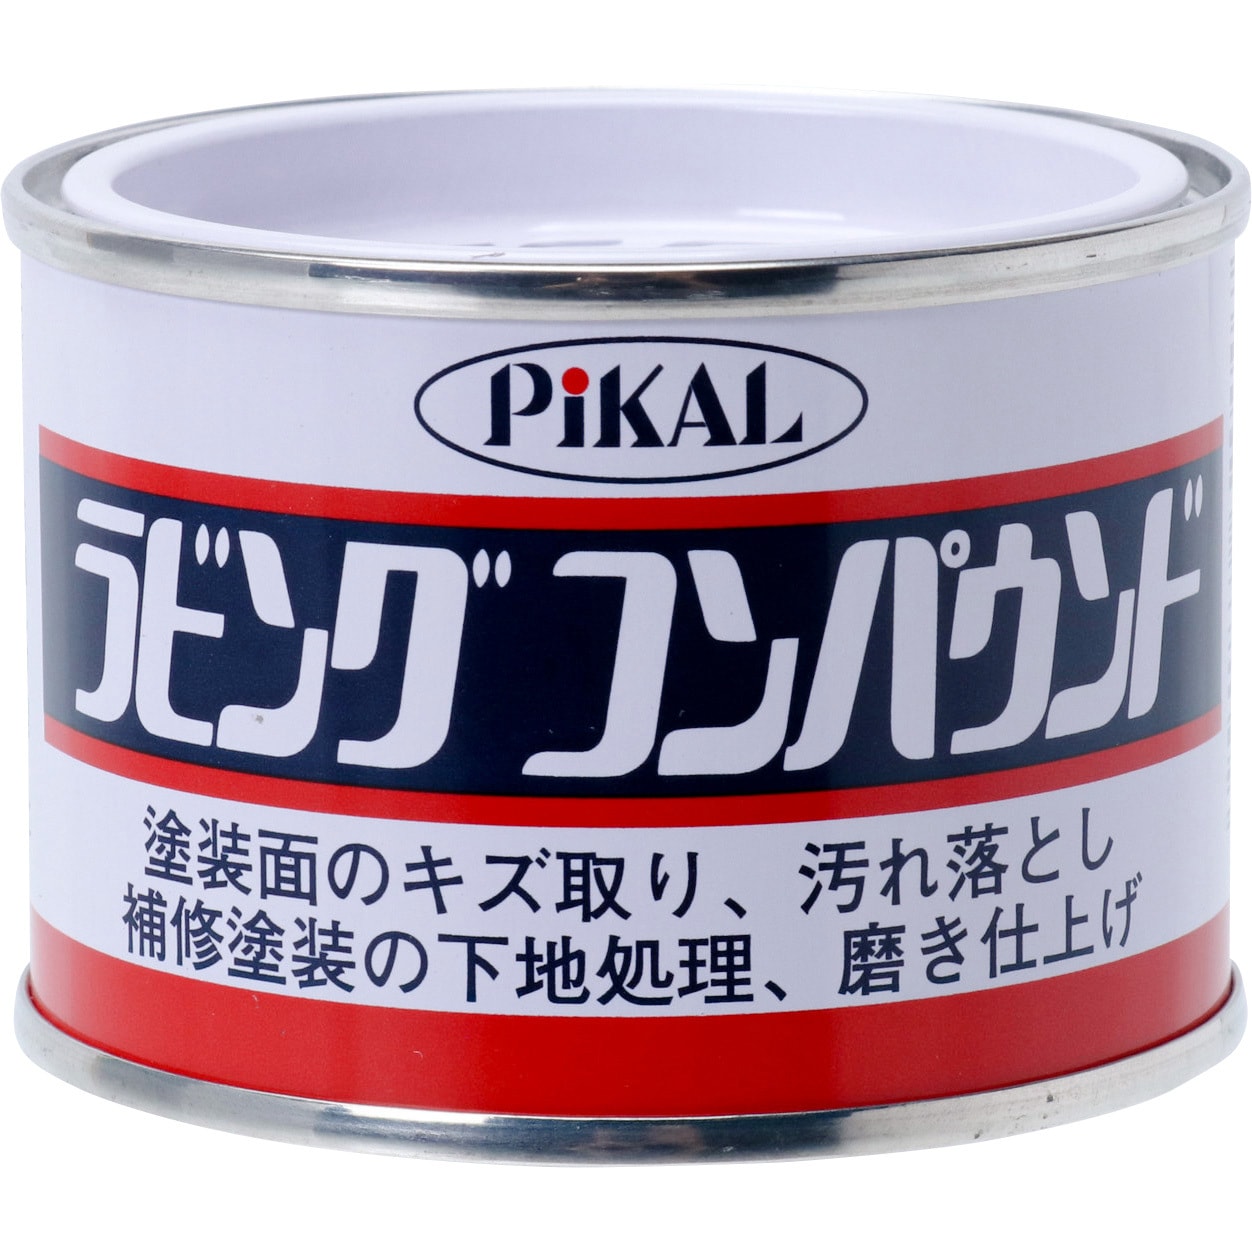 600 ピカール ラビングコンパウンド 日本磨料工業 1缶 140g 通販モノタロウ